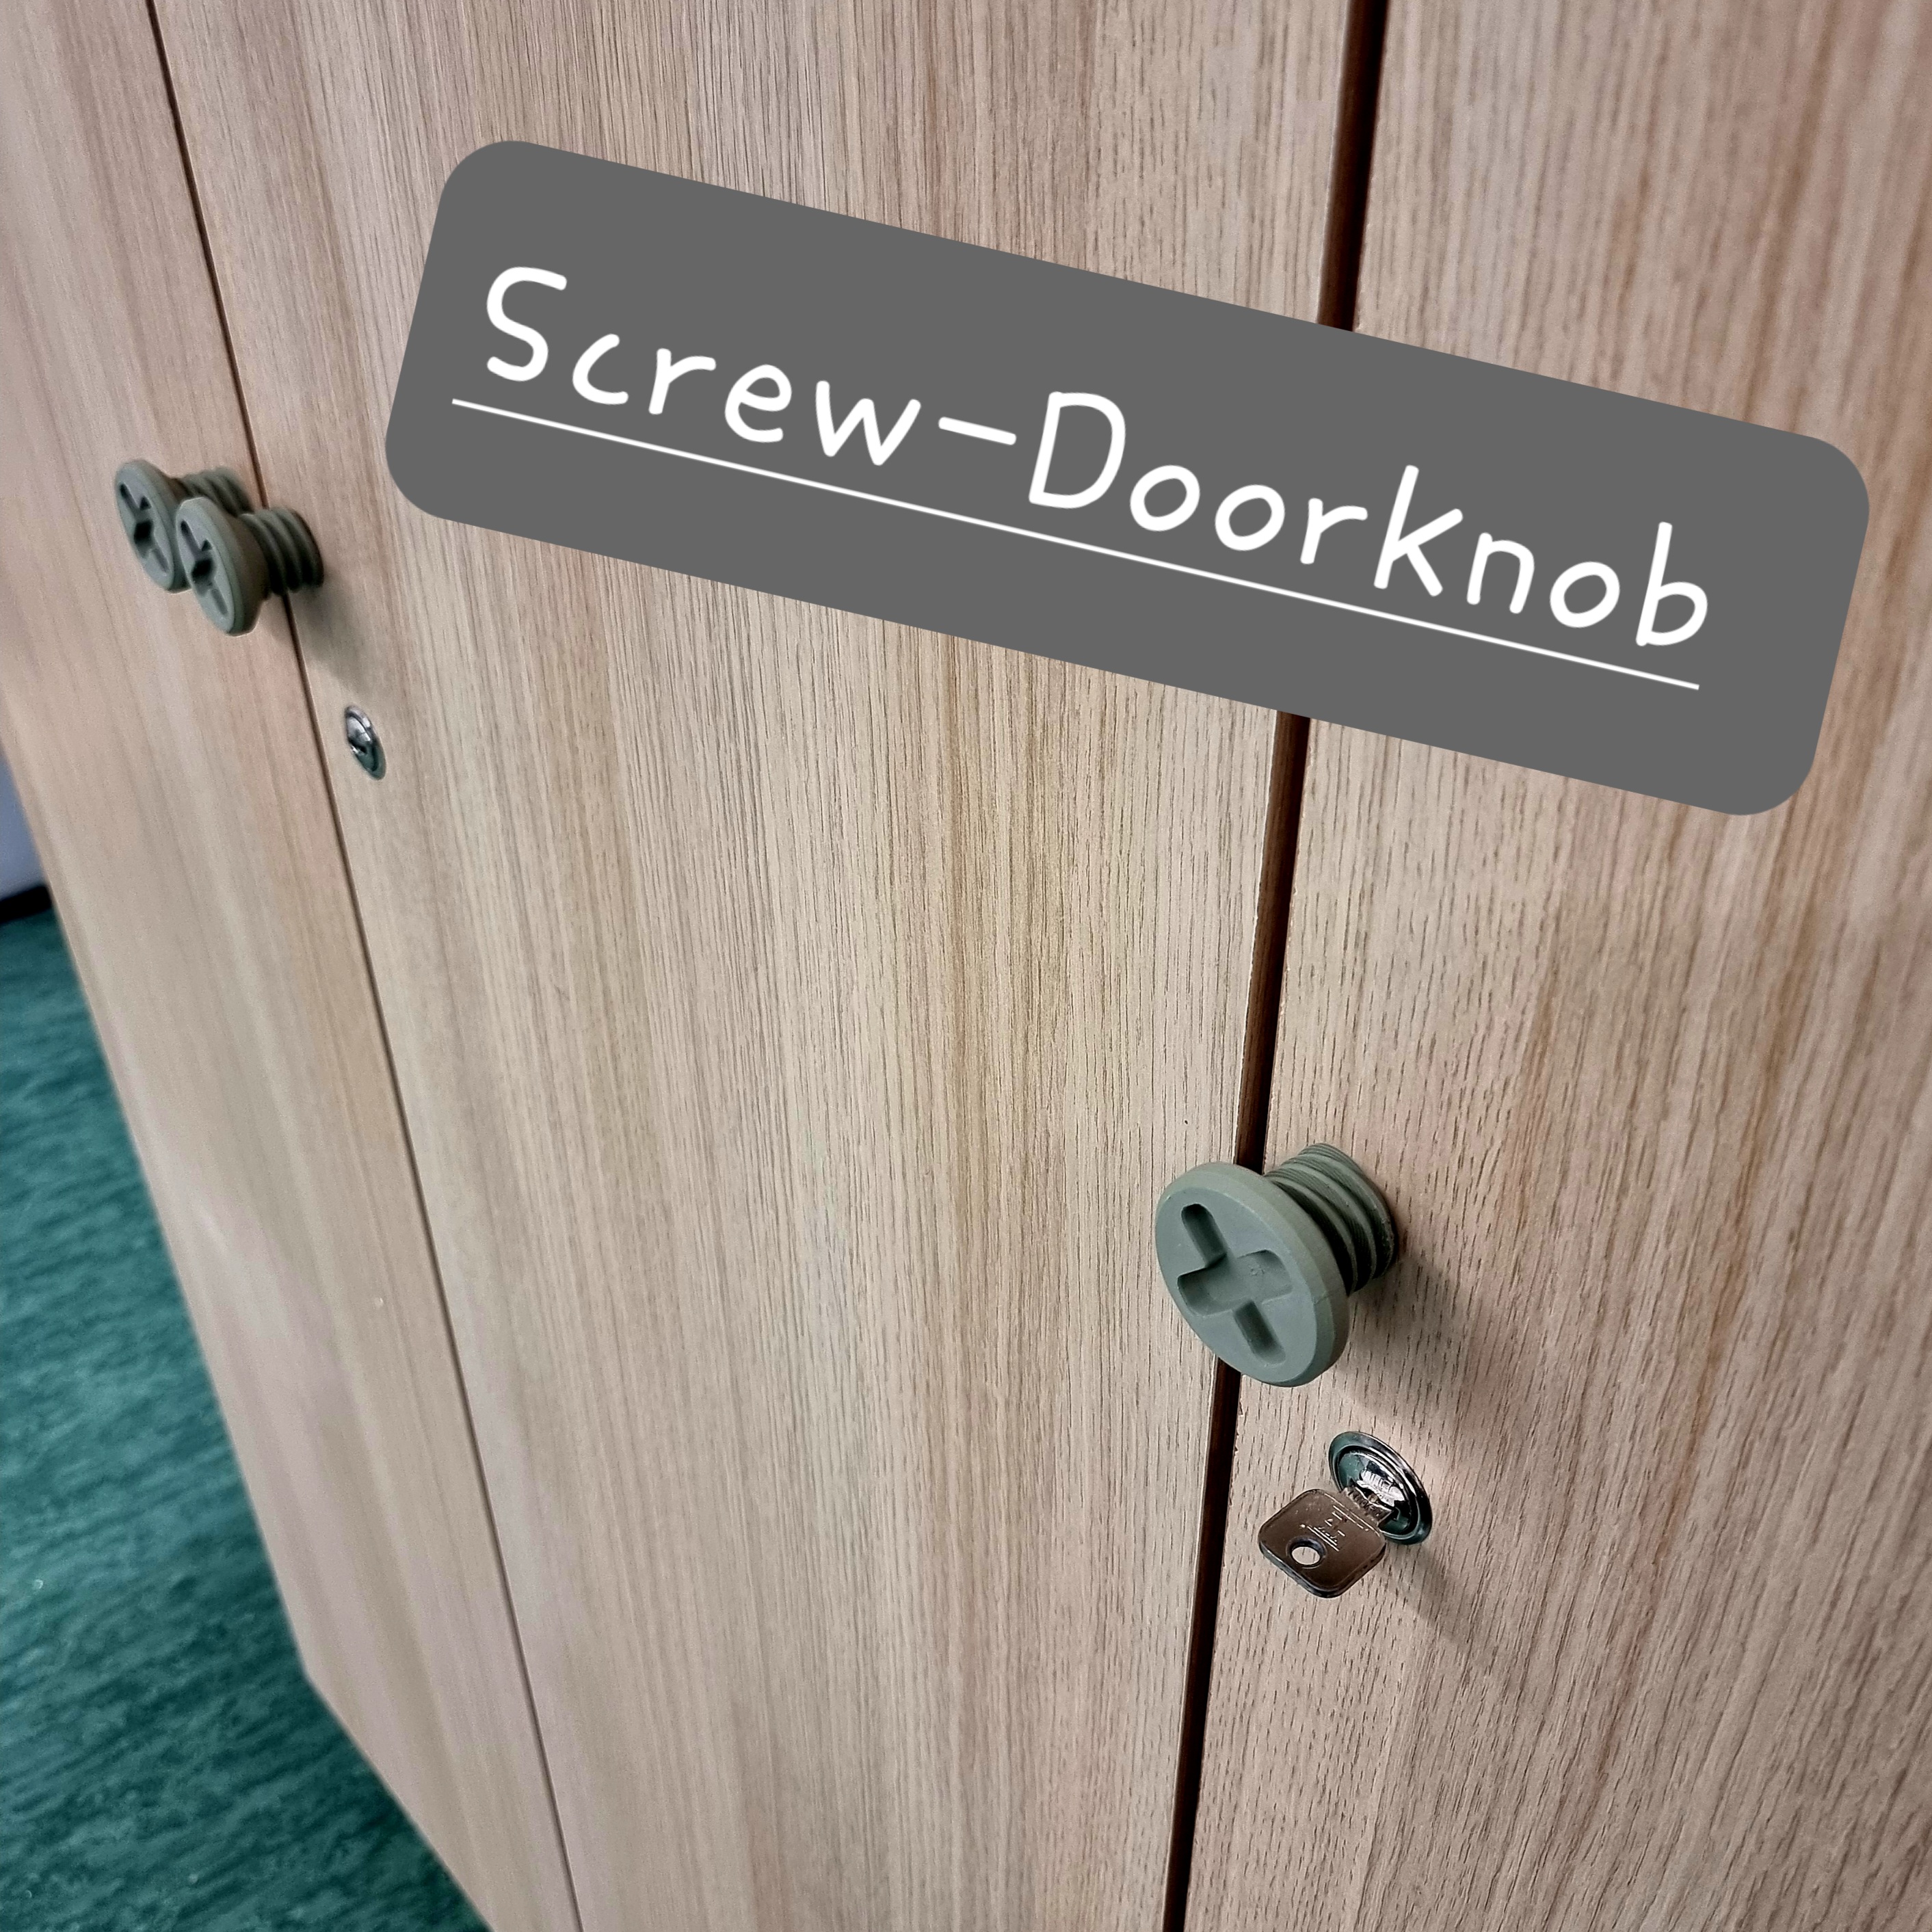 Screw doorknob